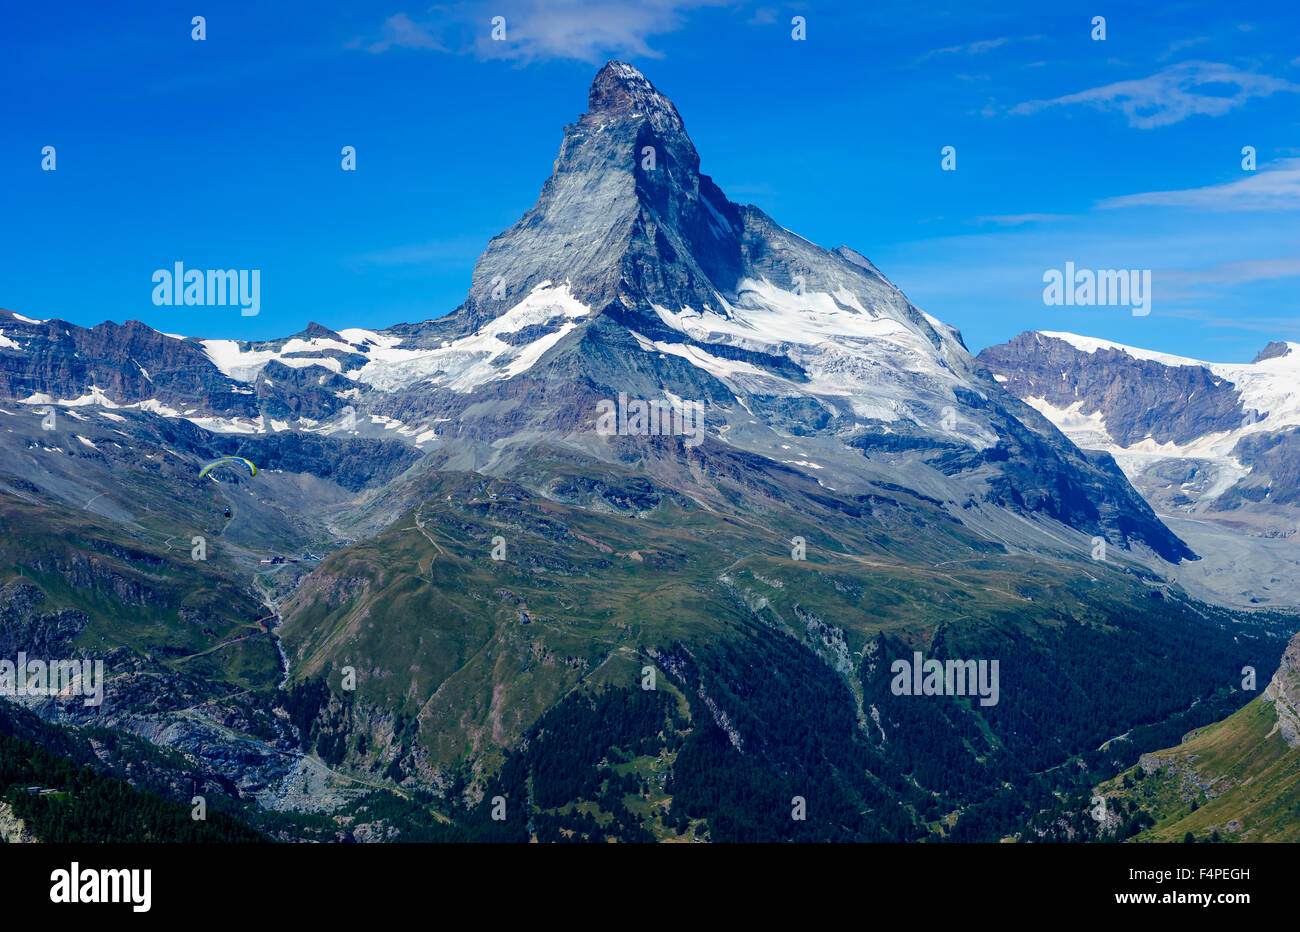 Droite vue du Cervin sommet dans les Alpes suisses. Juillet, 2015. Cervin, Suisse. Banque D'Images